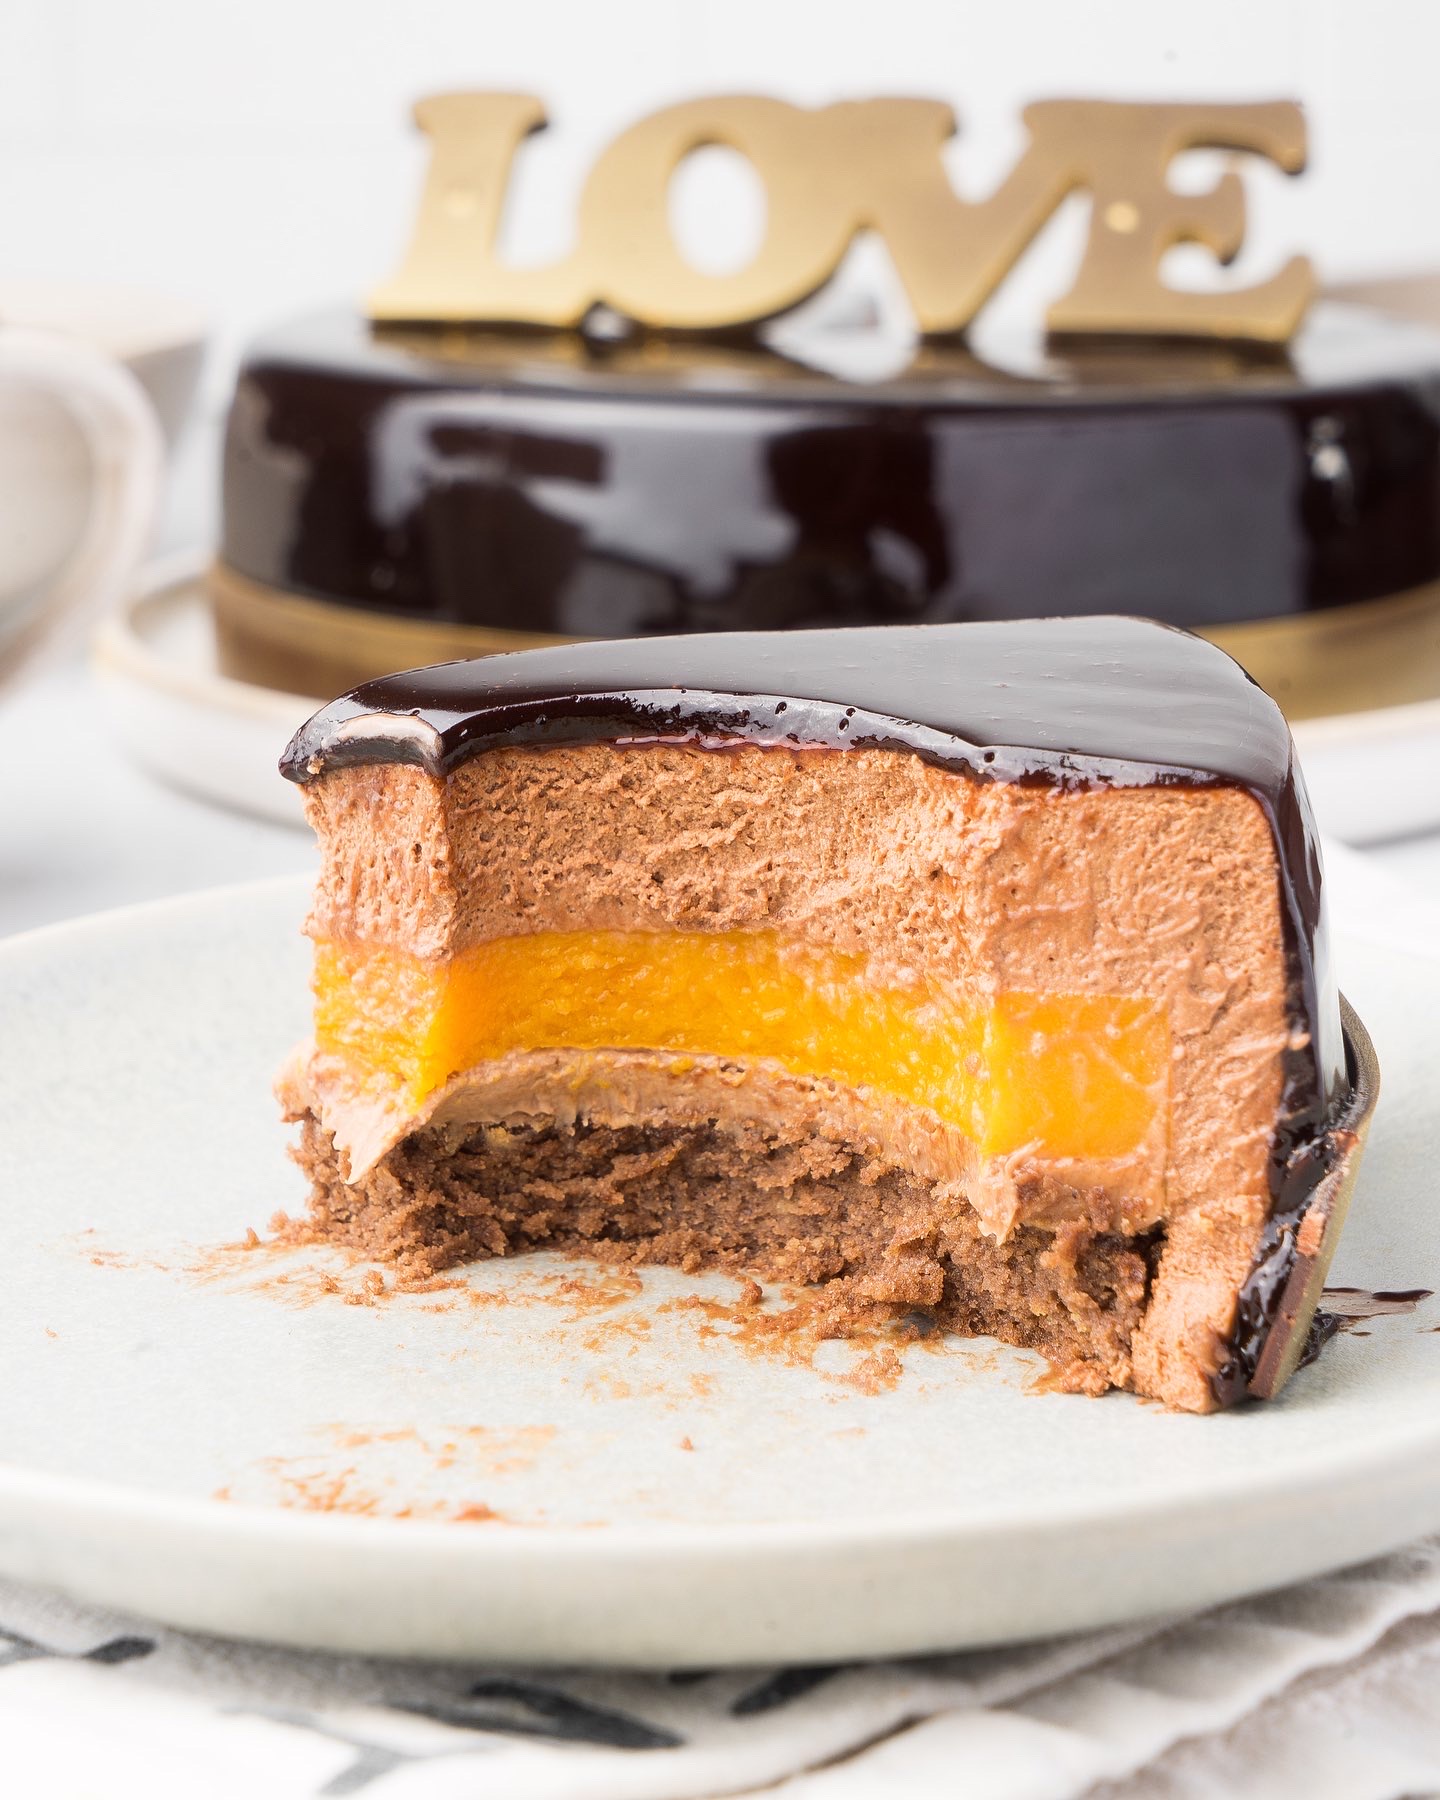 Современные десерты: муссовый шоколадный торт «Шоколадная любовь» | Andy  Chef (Энди Шеф) — блог о еде и путешествиях, пошаговые рецепты,  интернет-магазин для кондитеров |